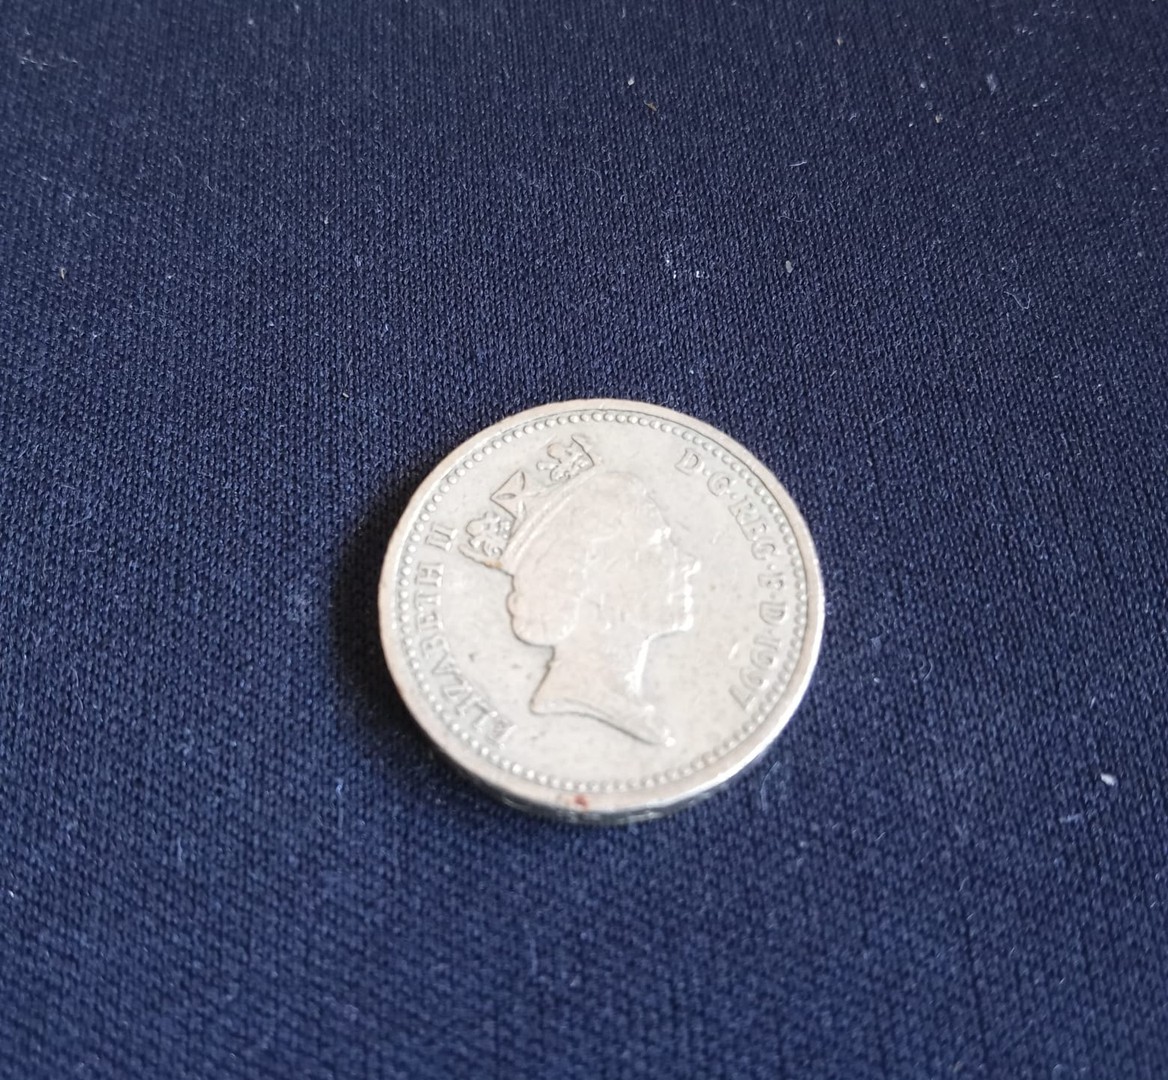 arte y antigüedades - Moneda rara de 1 libra Queen Elizabeth II, DECUS ET TUTAMEN 1997.  One Pound. 